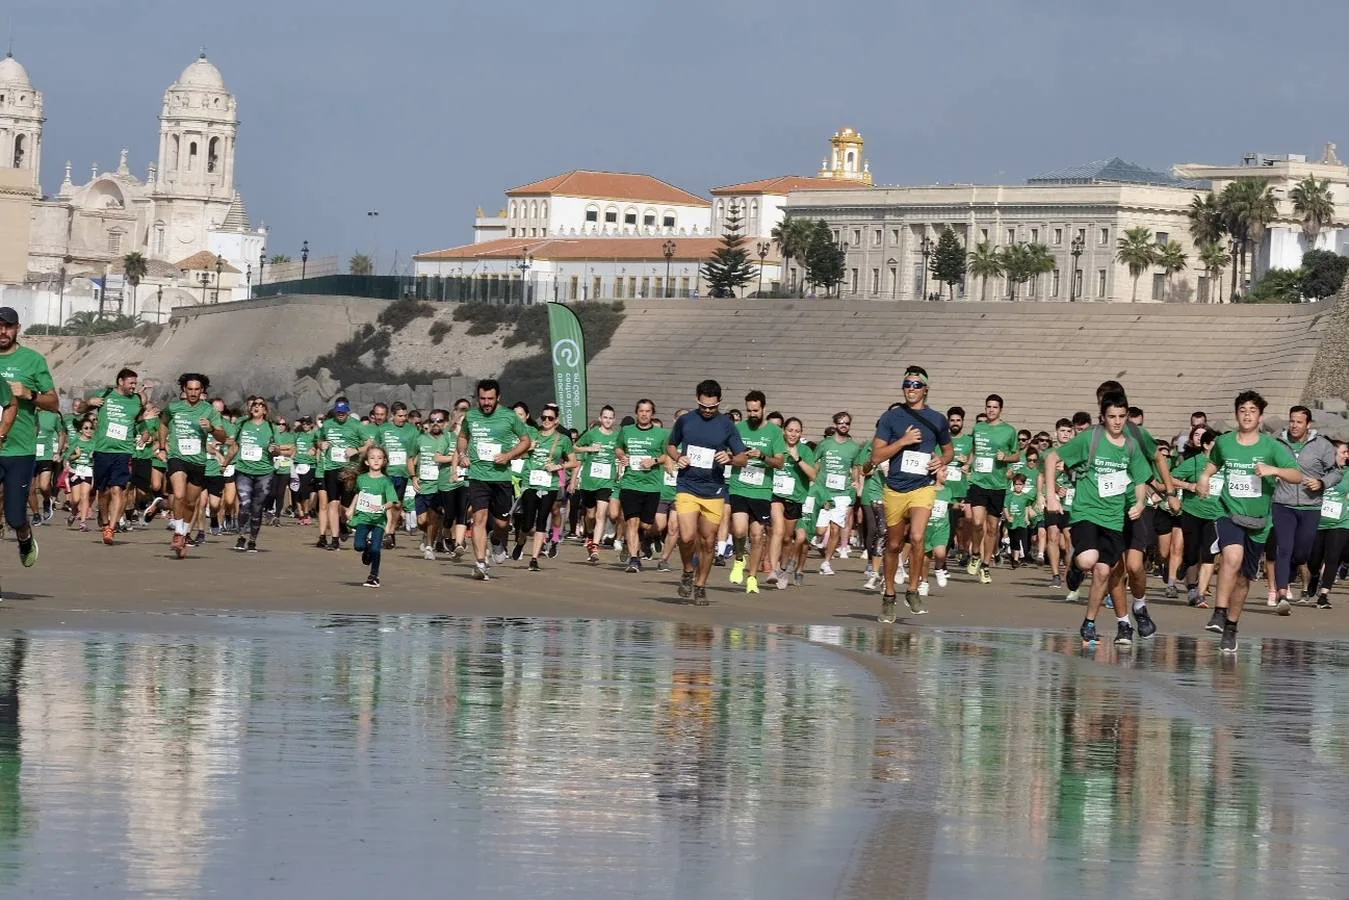 Fotos: Cádiz, en marcha contra el cáncer